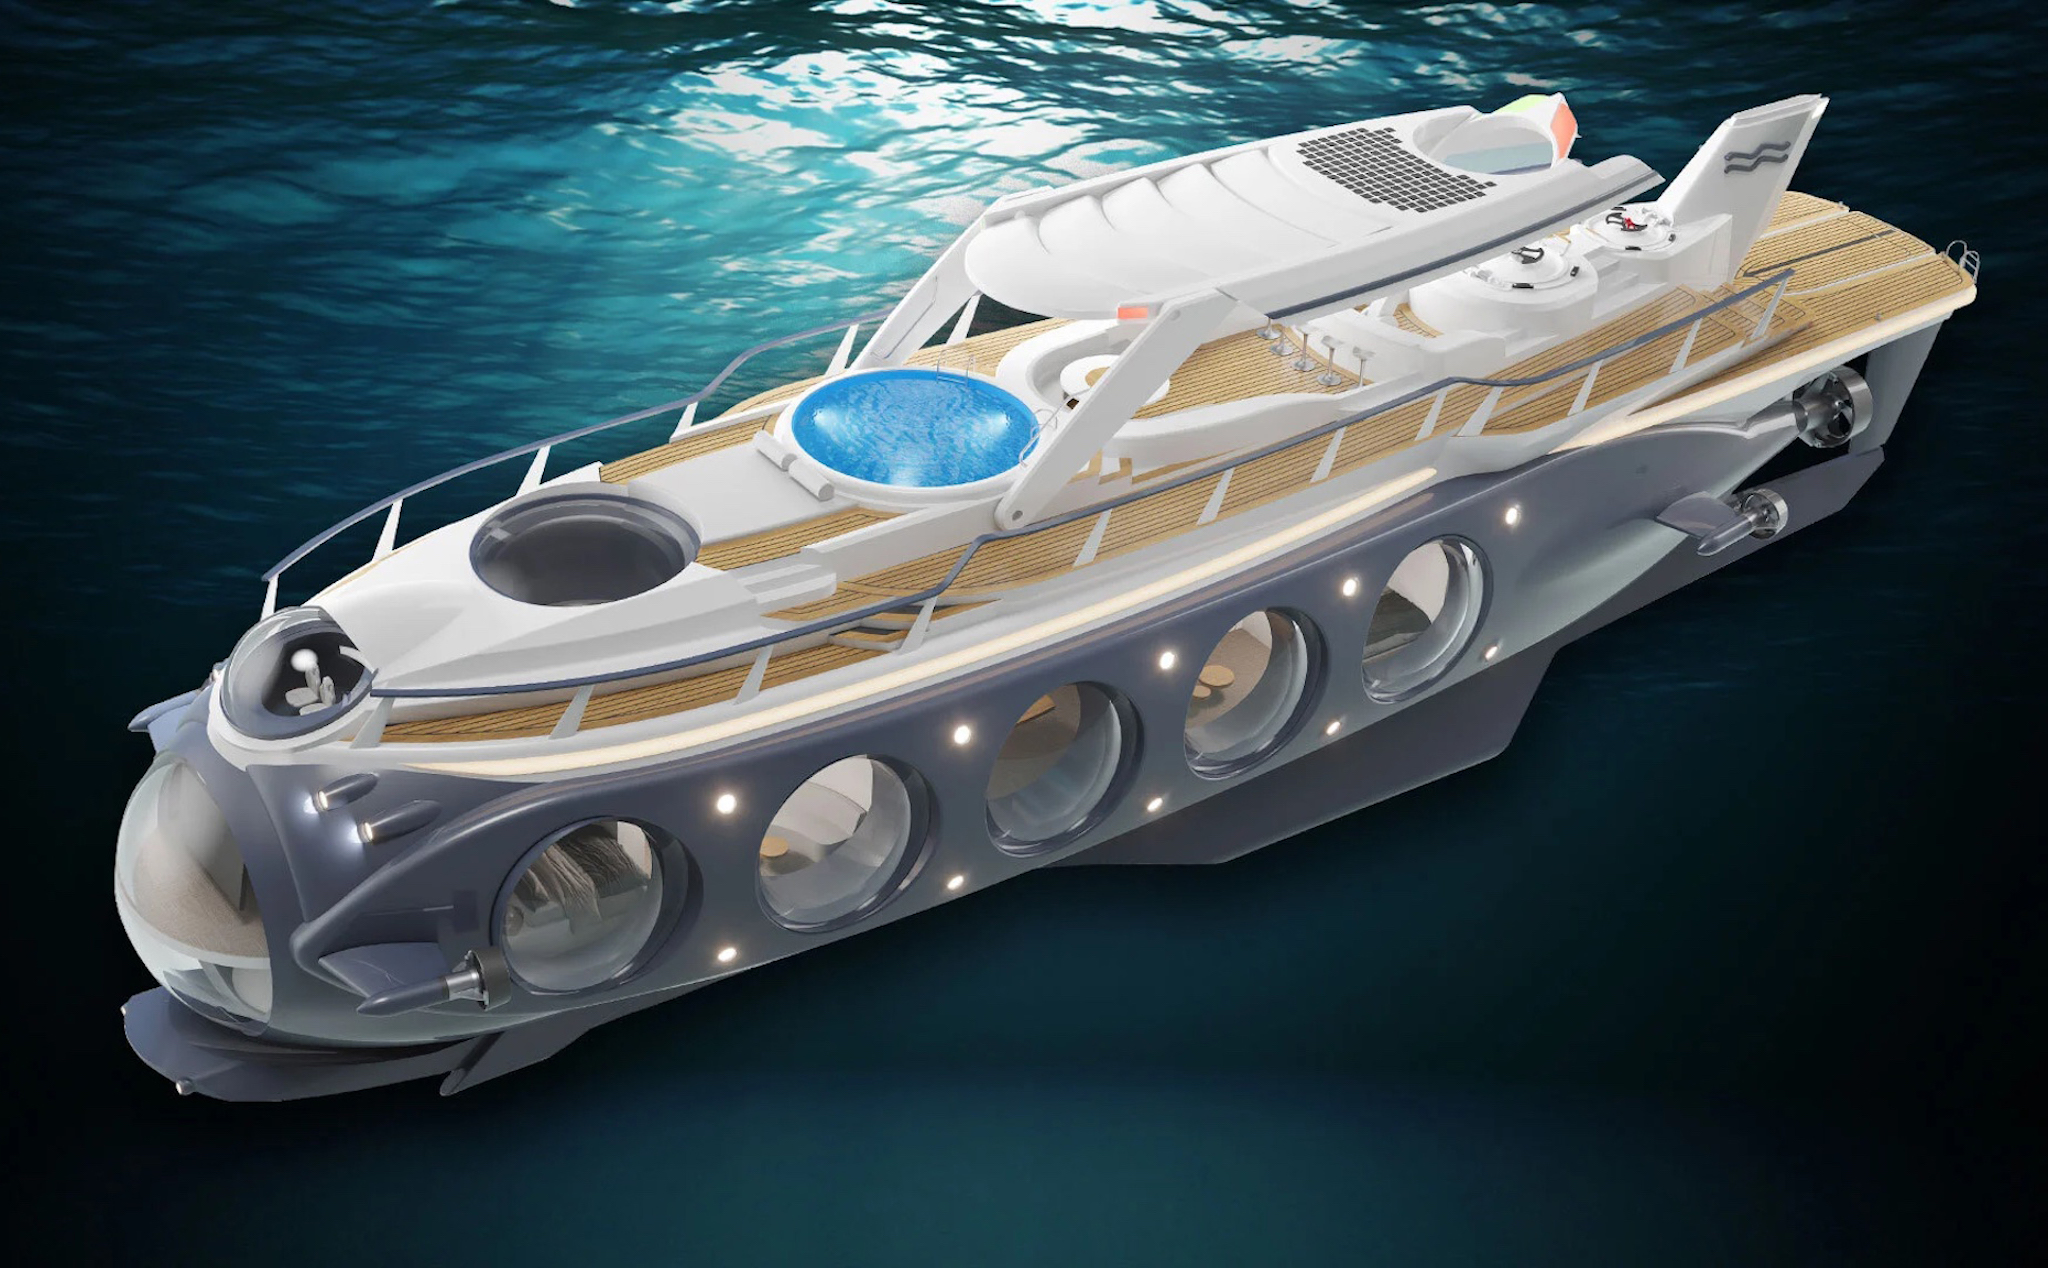 Siêu du thuyền có thể biến thành tàu ngầm: Giá từ 597 tỷ đồng, lặn được dưới nước tối đa 4 ngày